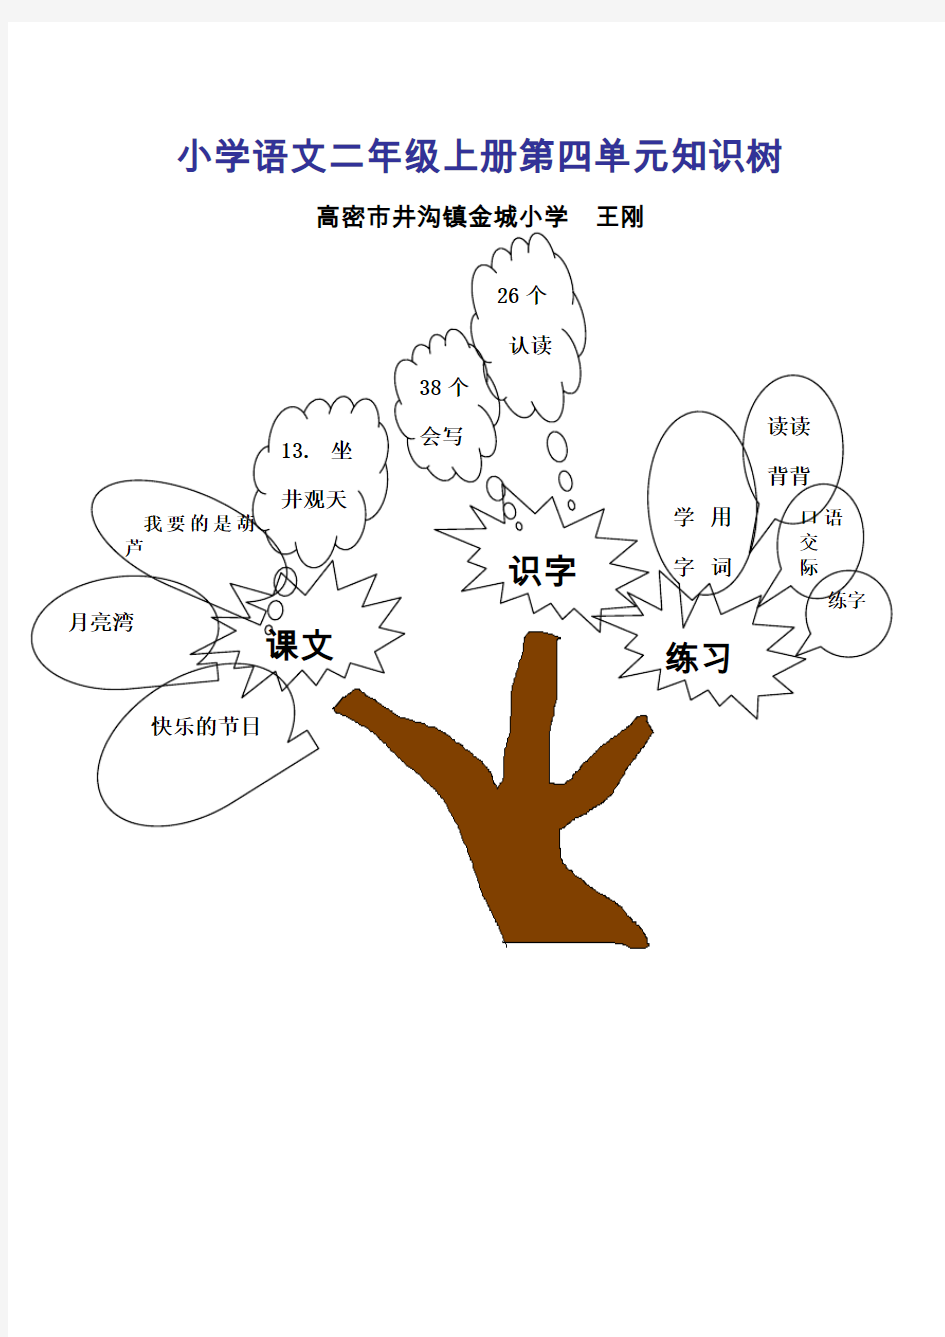 二年级语文单元知识树